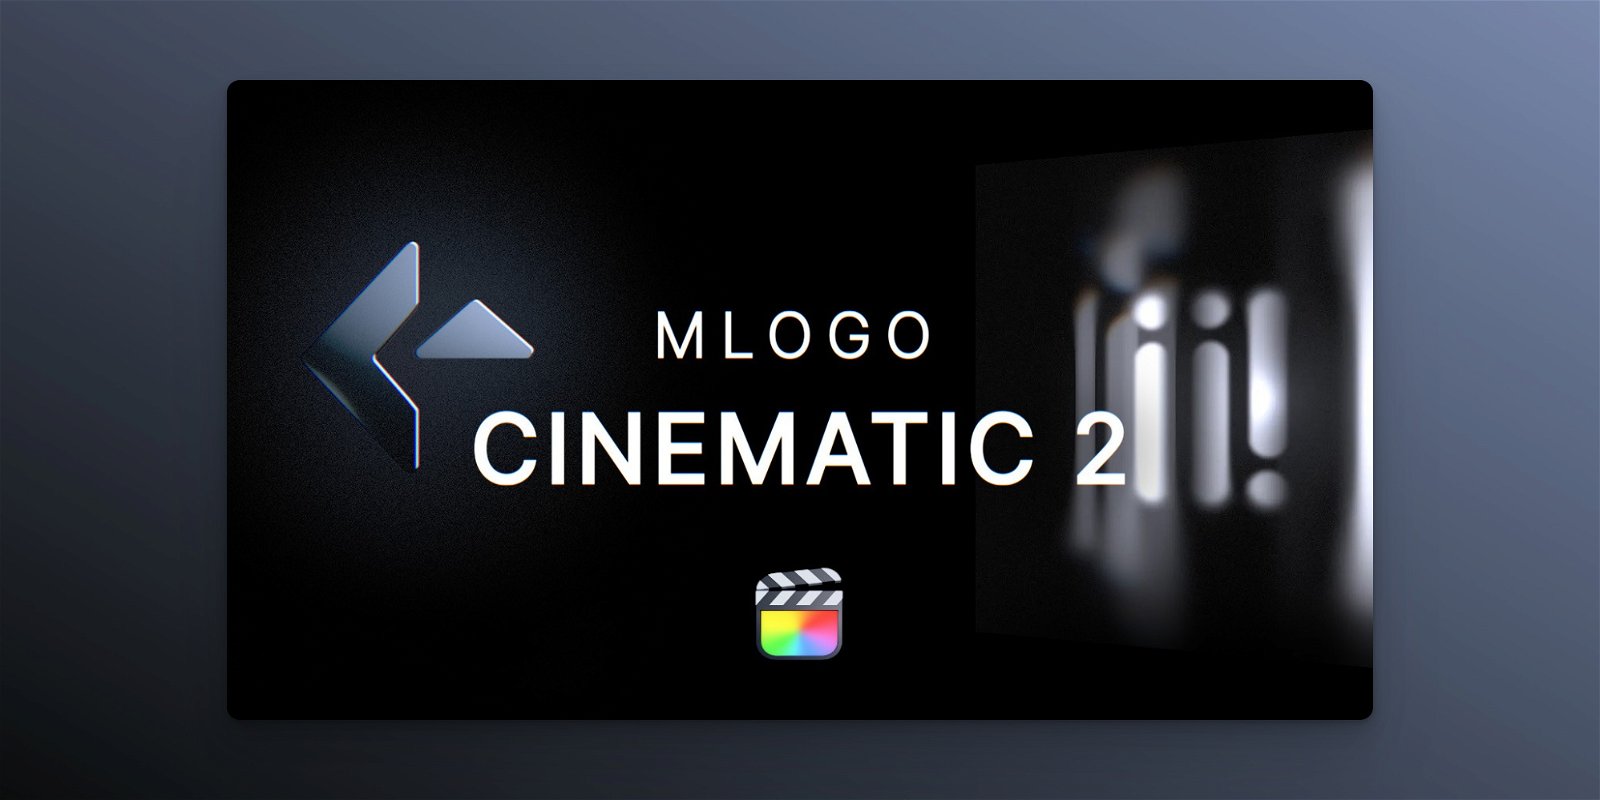 mLogo Cinematic 2